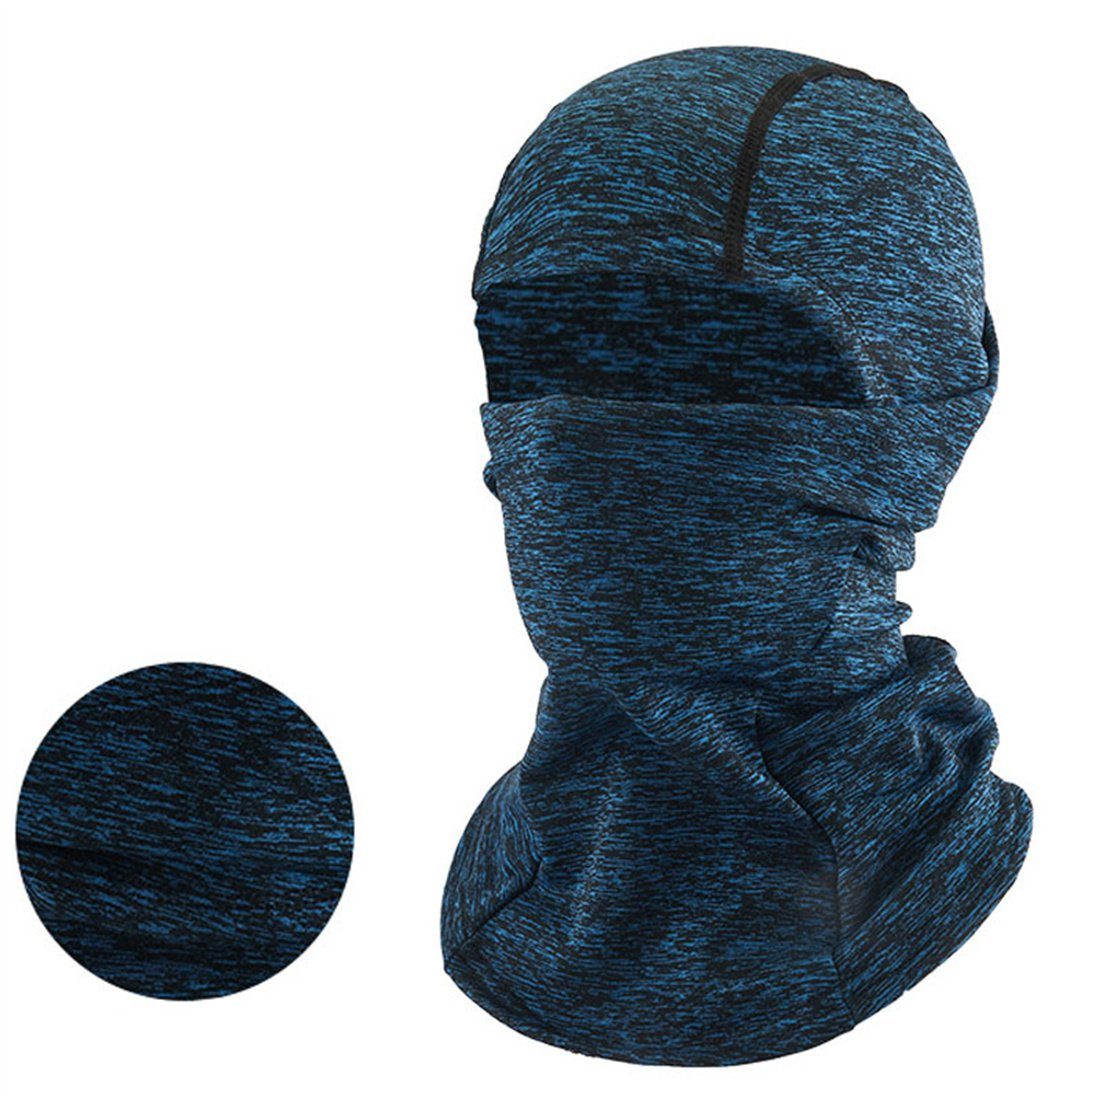 DÖRÖY Sturmhaube Winter Kopfbedeckung, Radfahren Ski unisex kalte Maske, warme blau